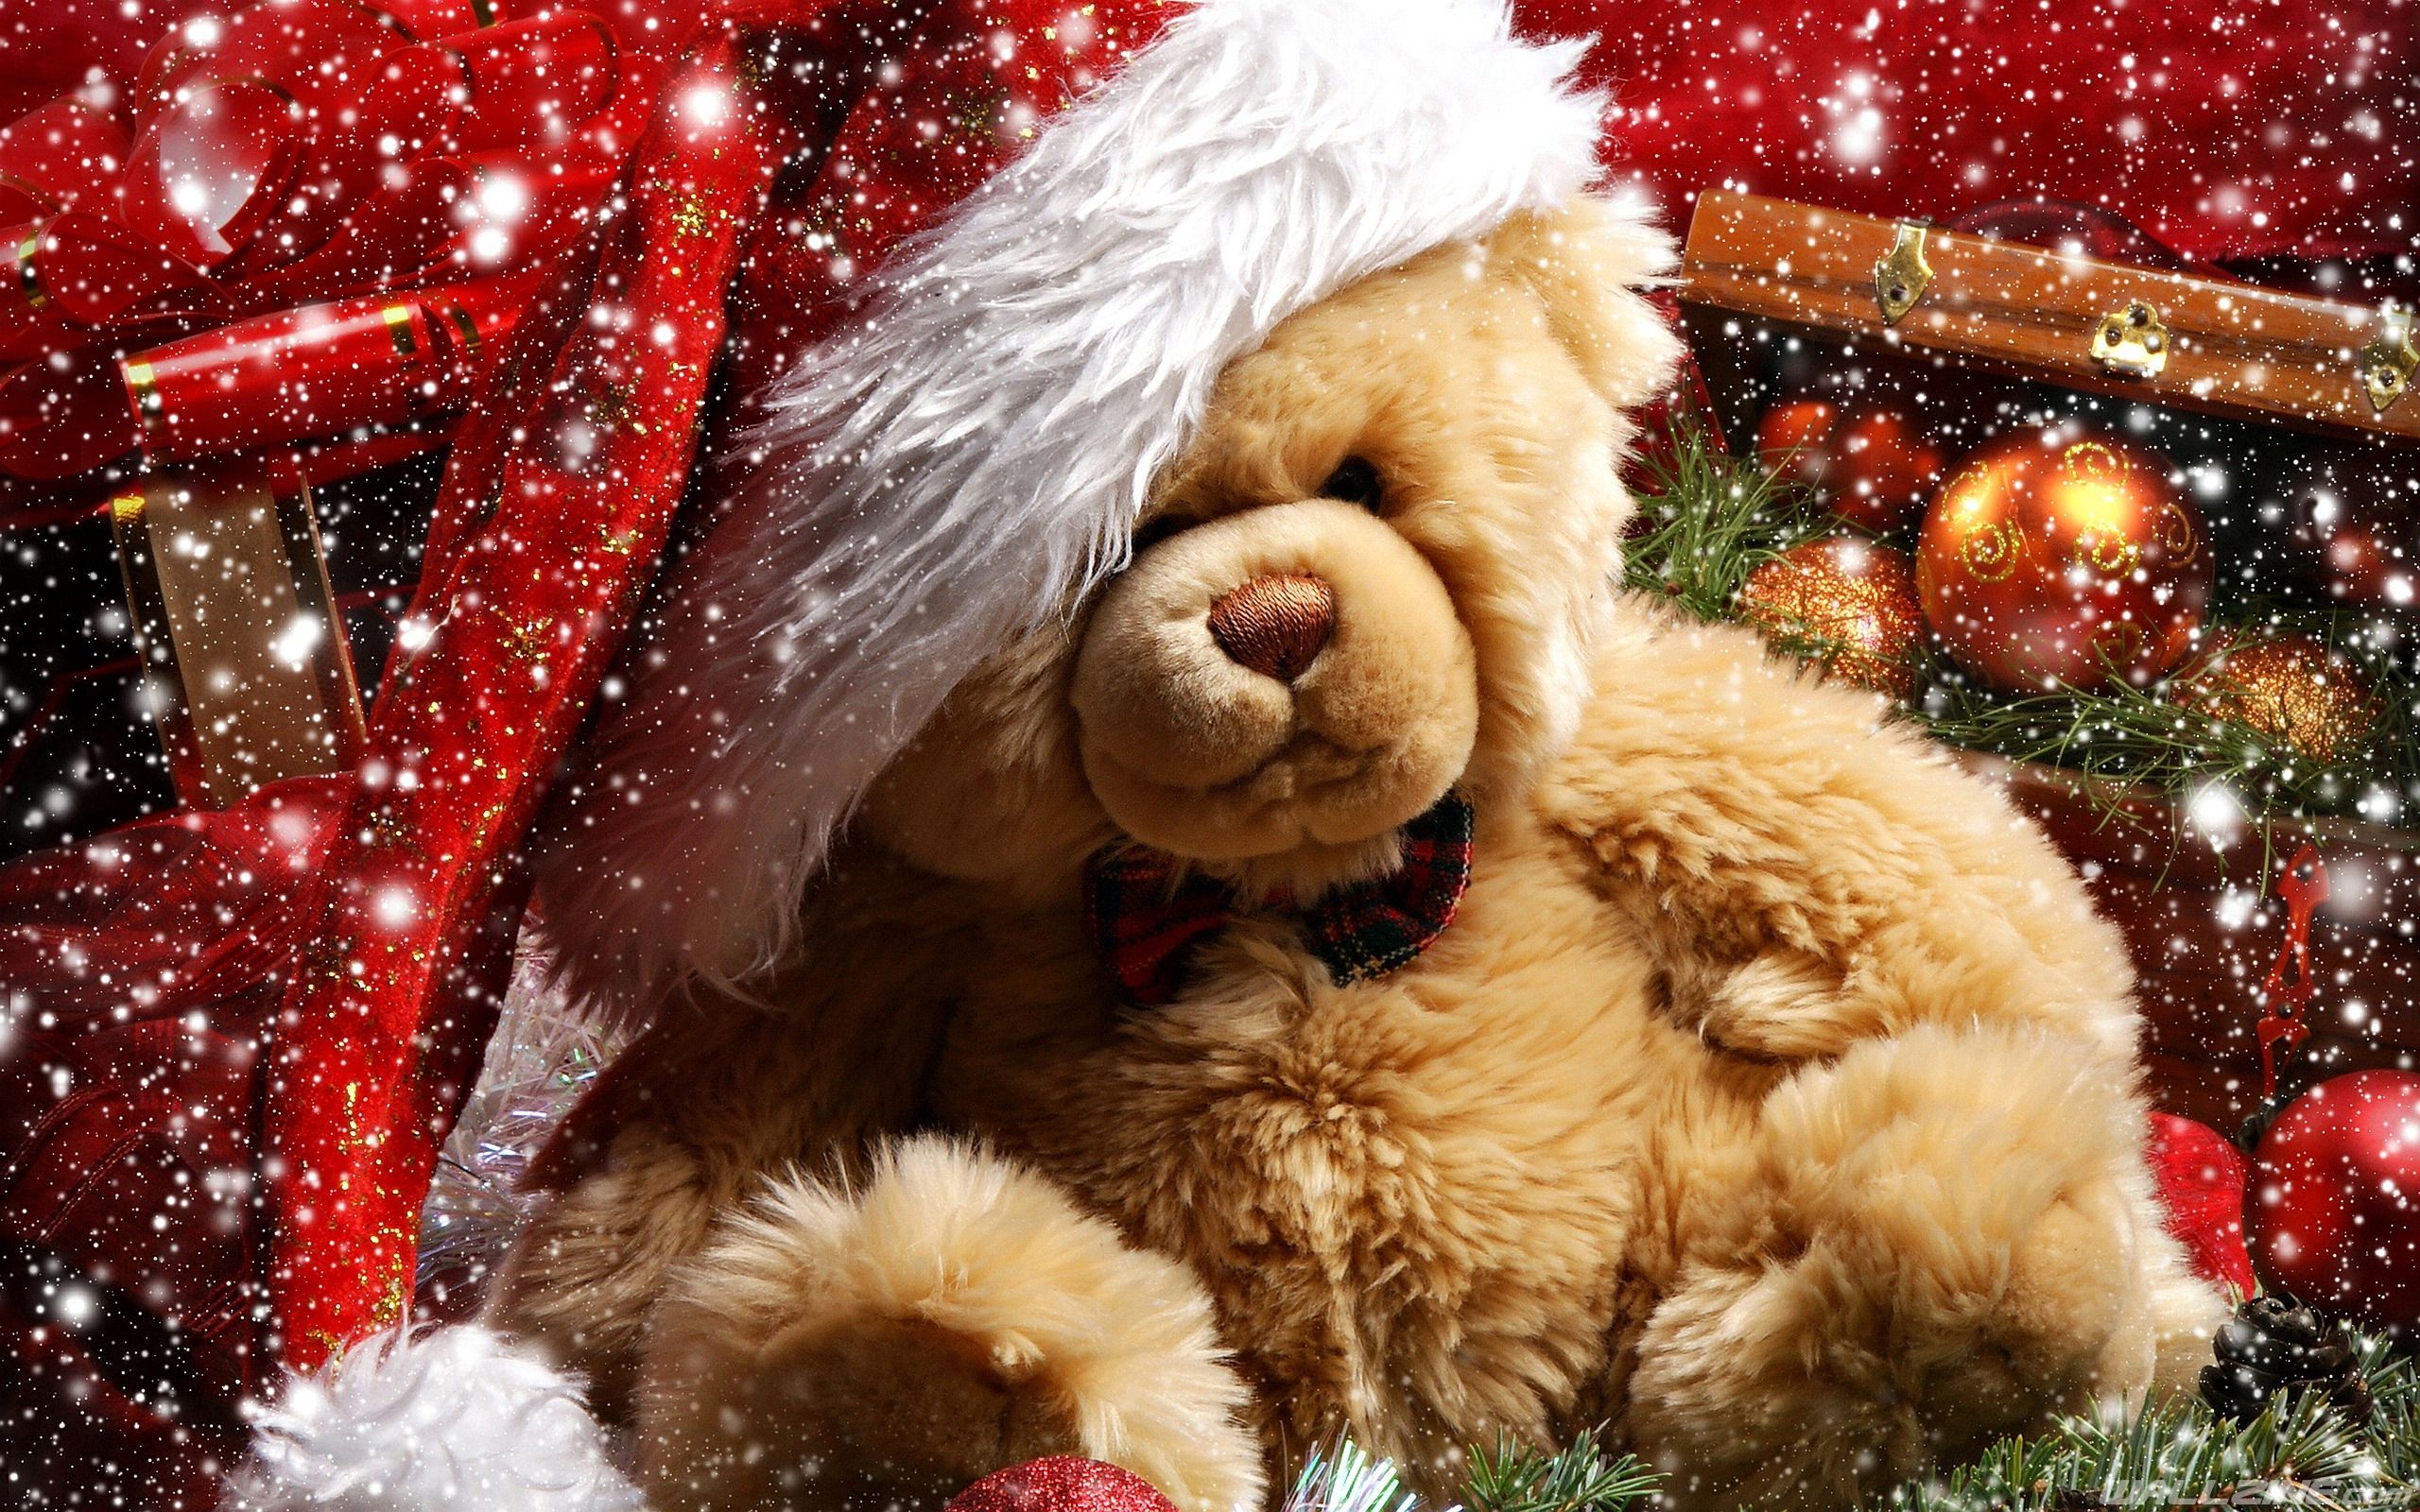 xmas teddy bear HD Desktop Wallpaper. Wallzine.com. Teddy bear day, Christmas teddy bear, Teddy bear wallpaper